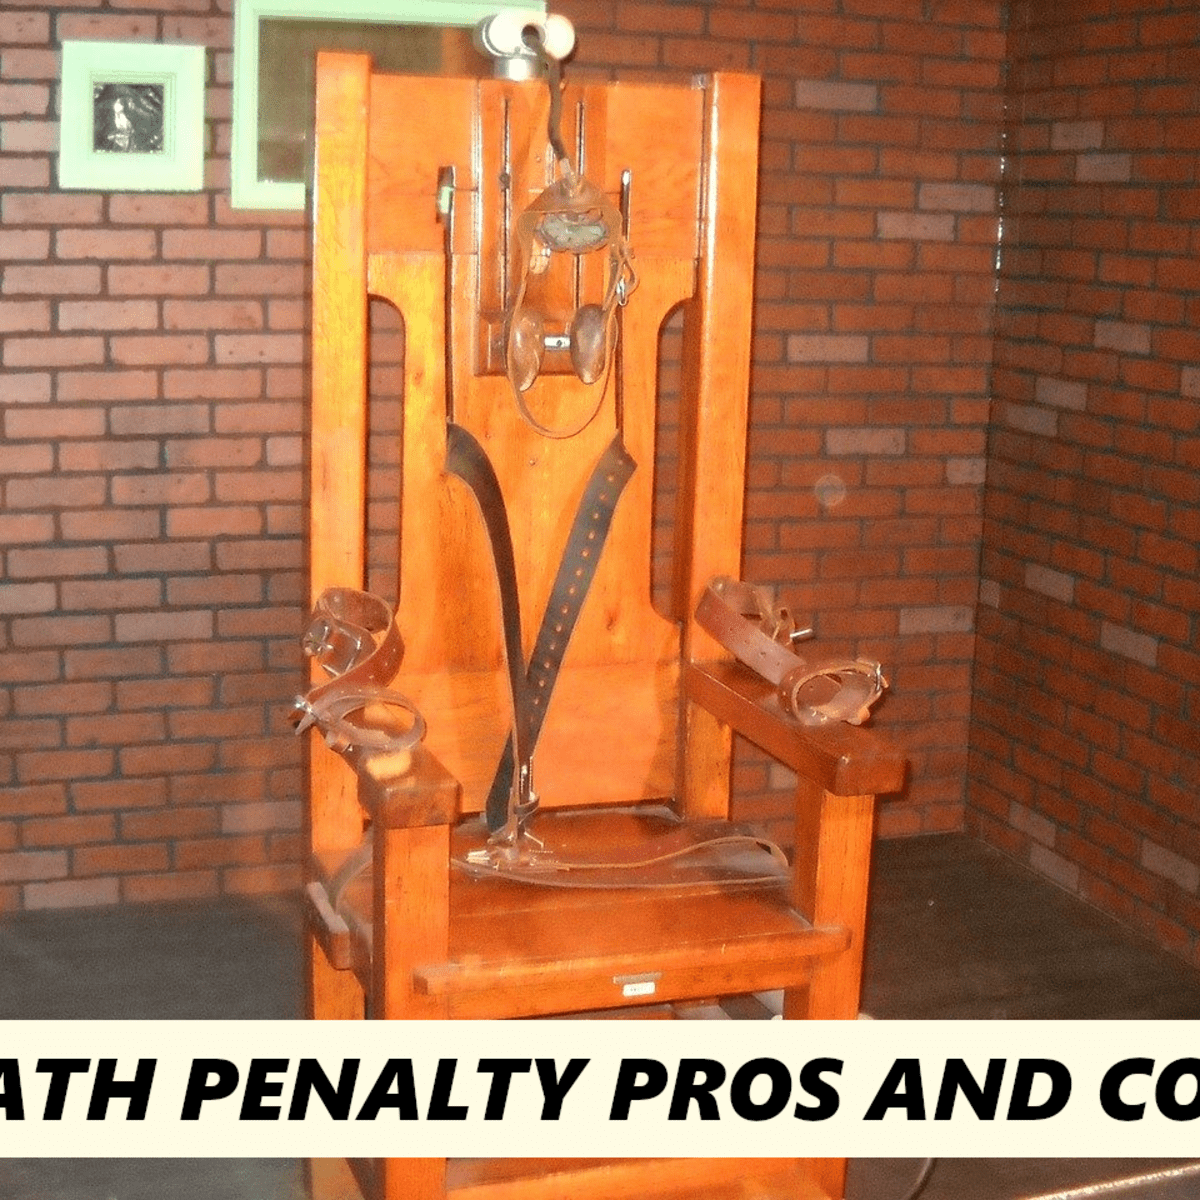 arguments against capital punishment essay